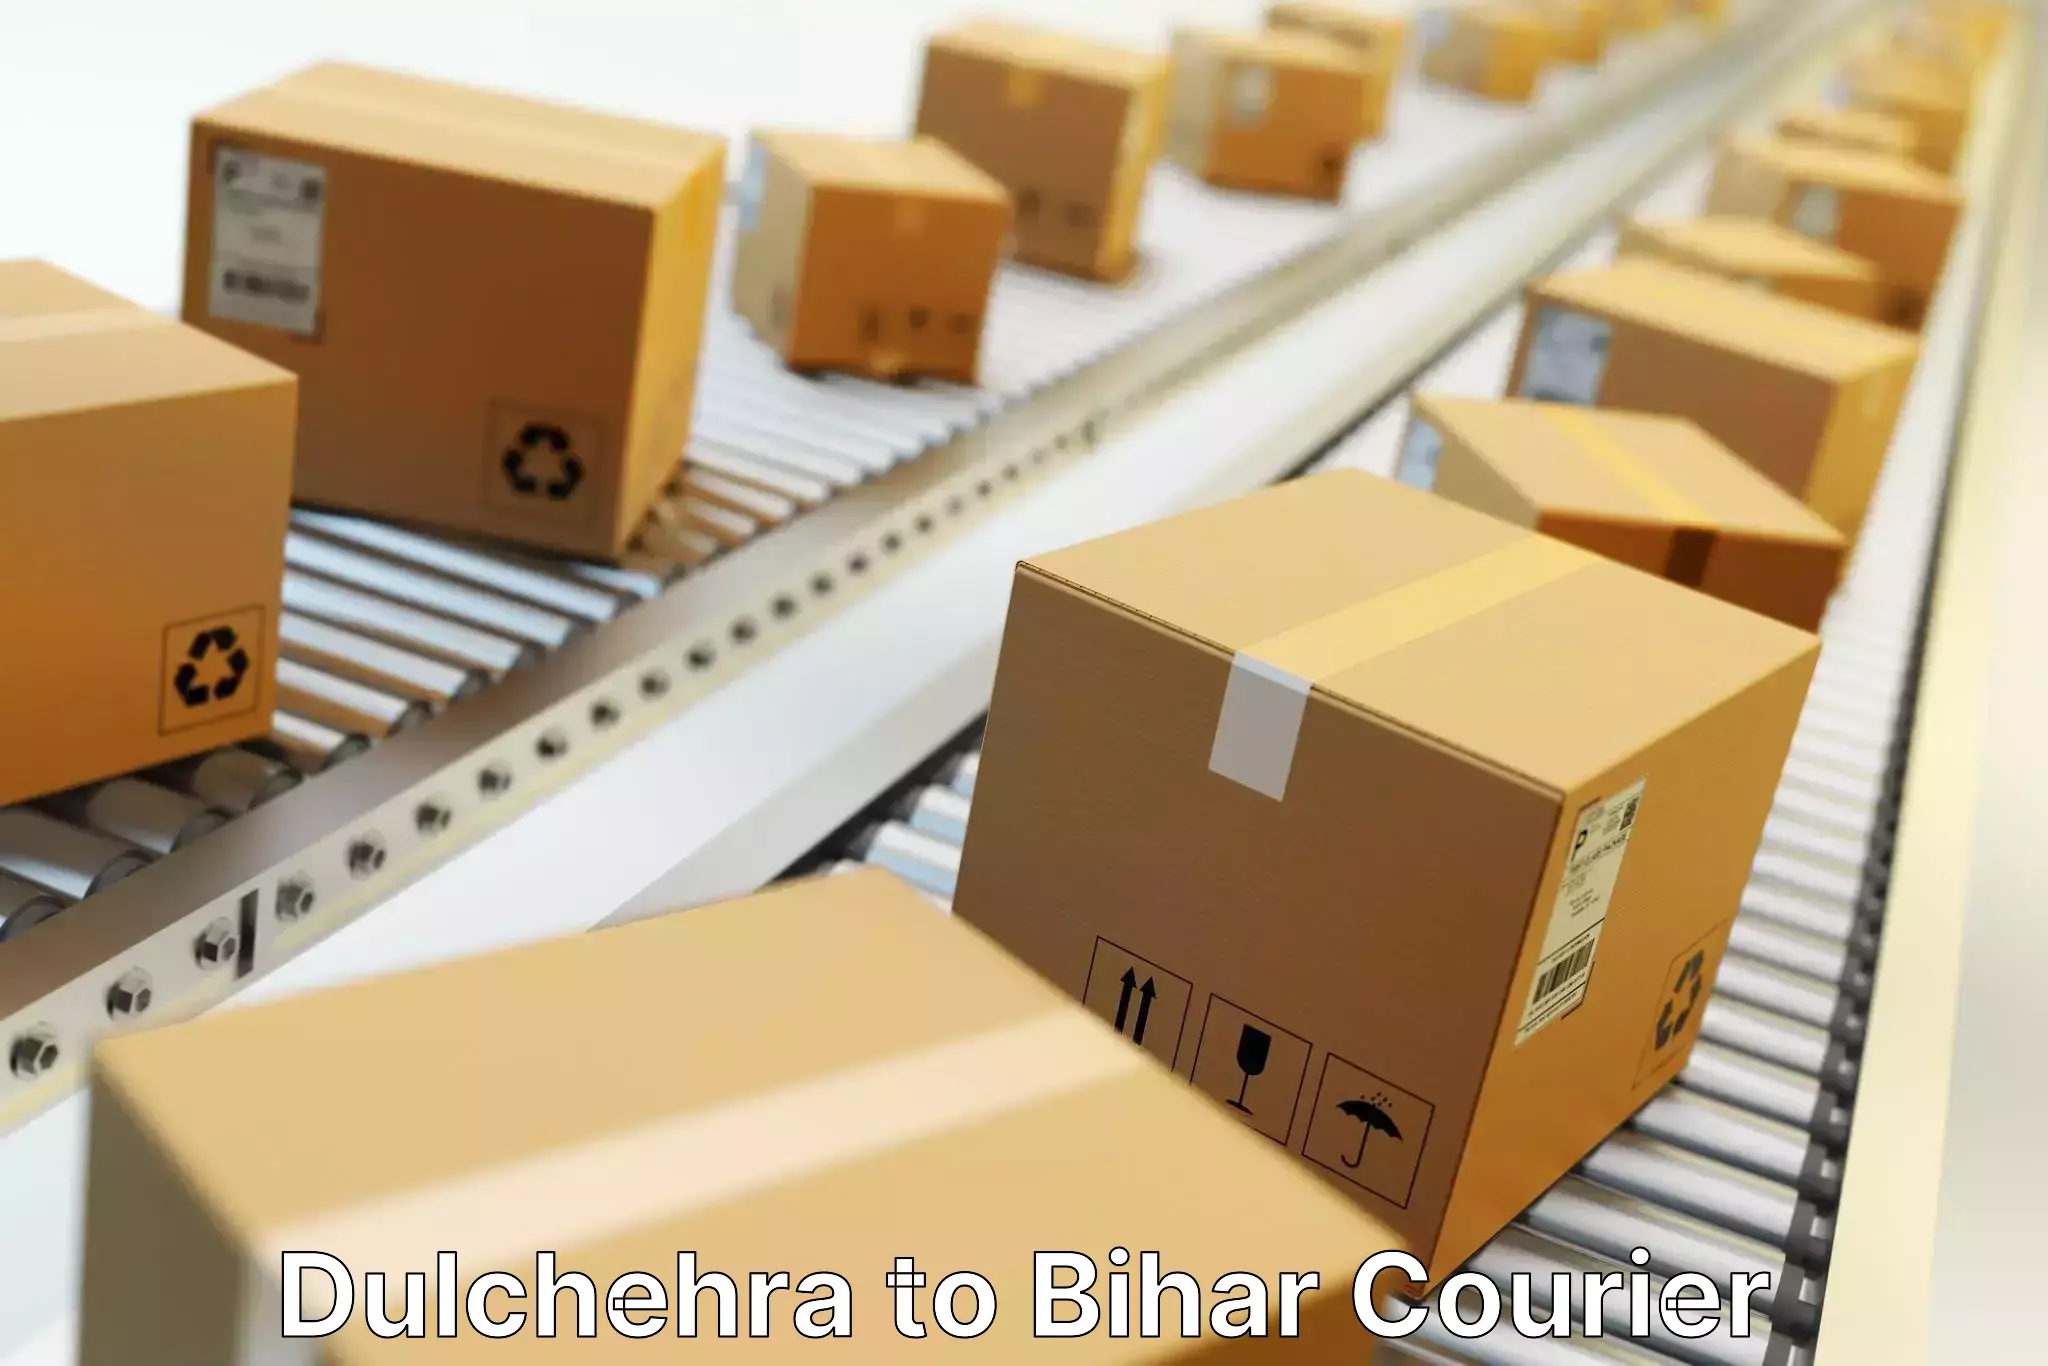 Logistics service provider Dulchehra to Biraul